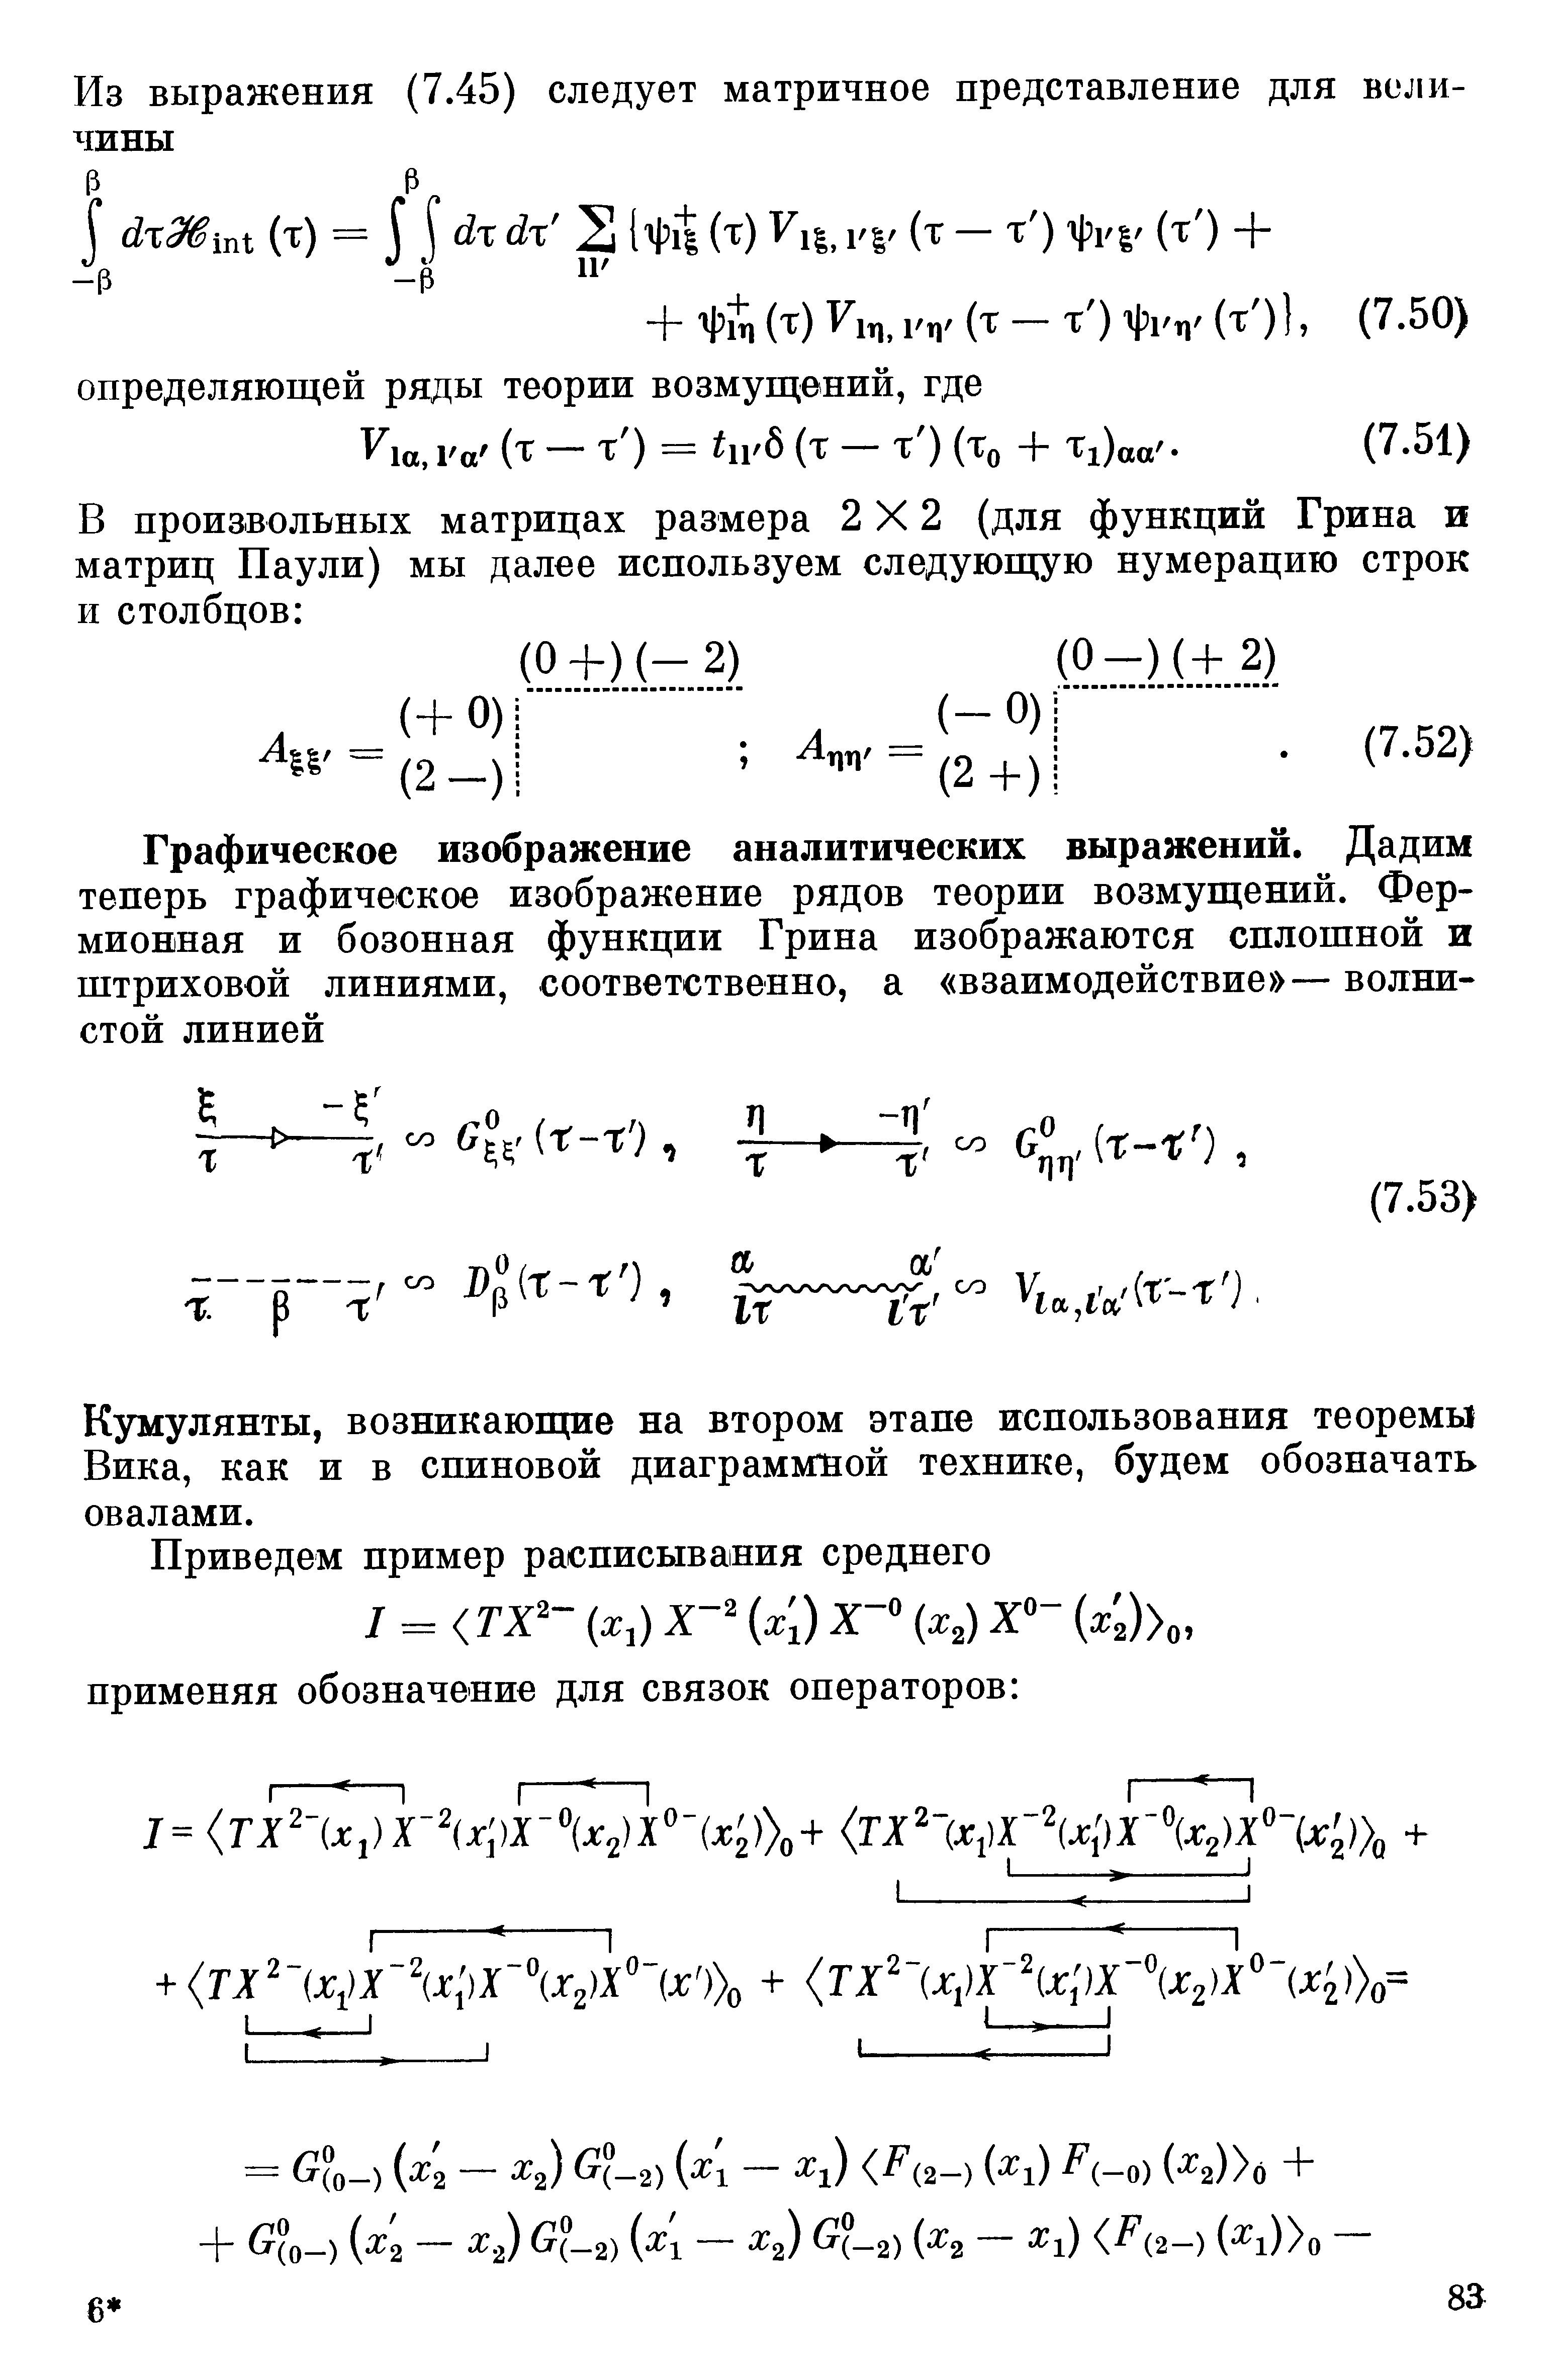 Кумулянты, возникаюпще на втором этапе использования теоремы Вика, как и в спиновой диаграммной технике, будем обозначать овалами.
